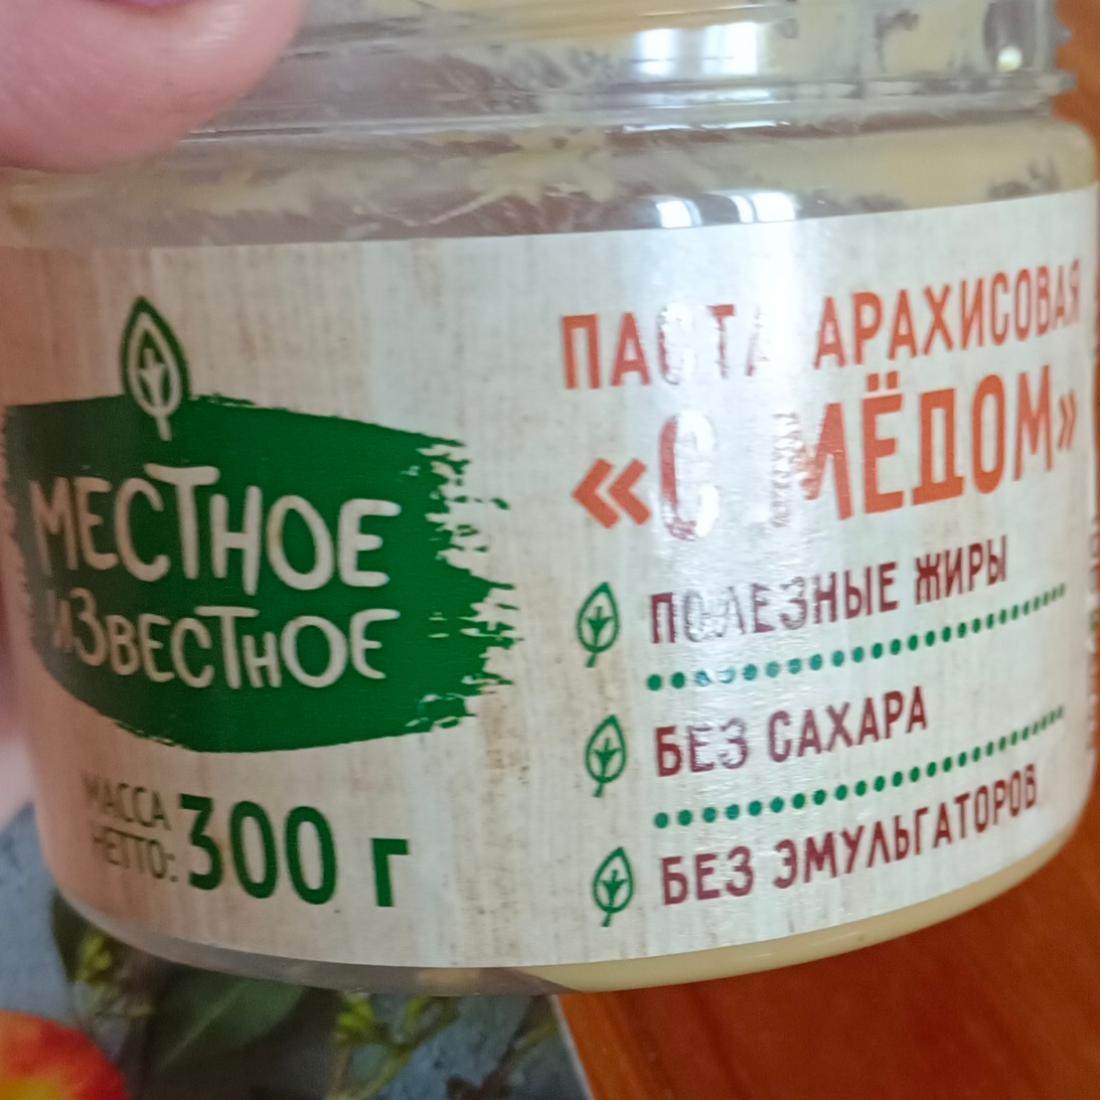 Фото - Паста арахисовая с медом Местное известное